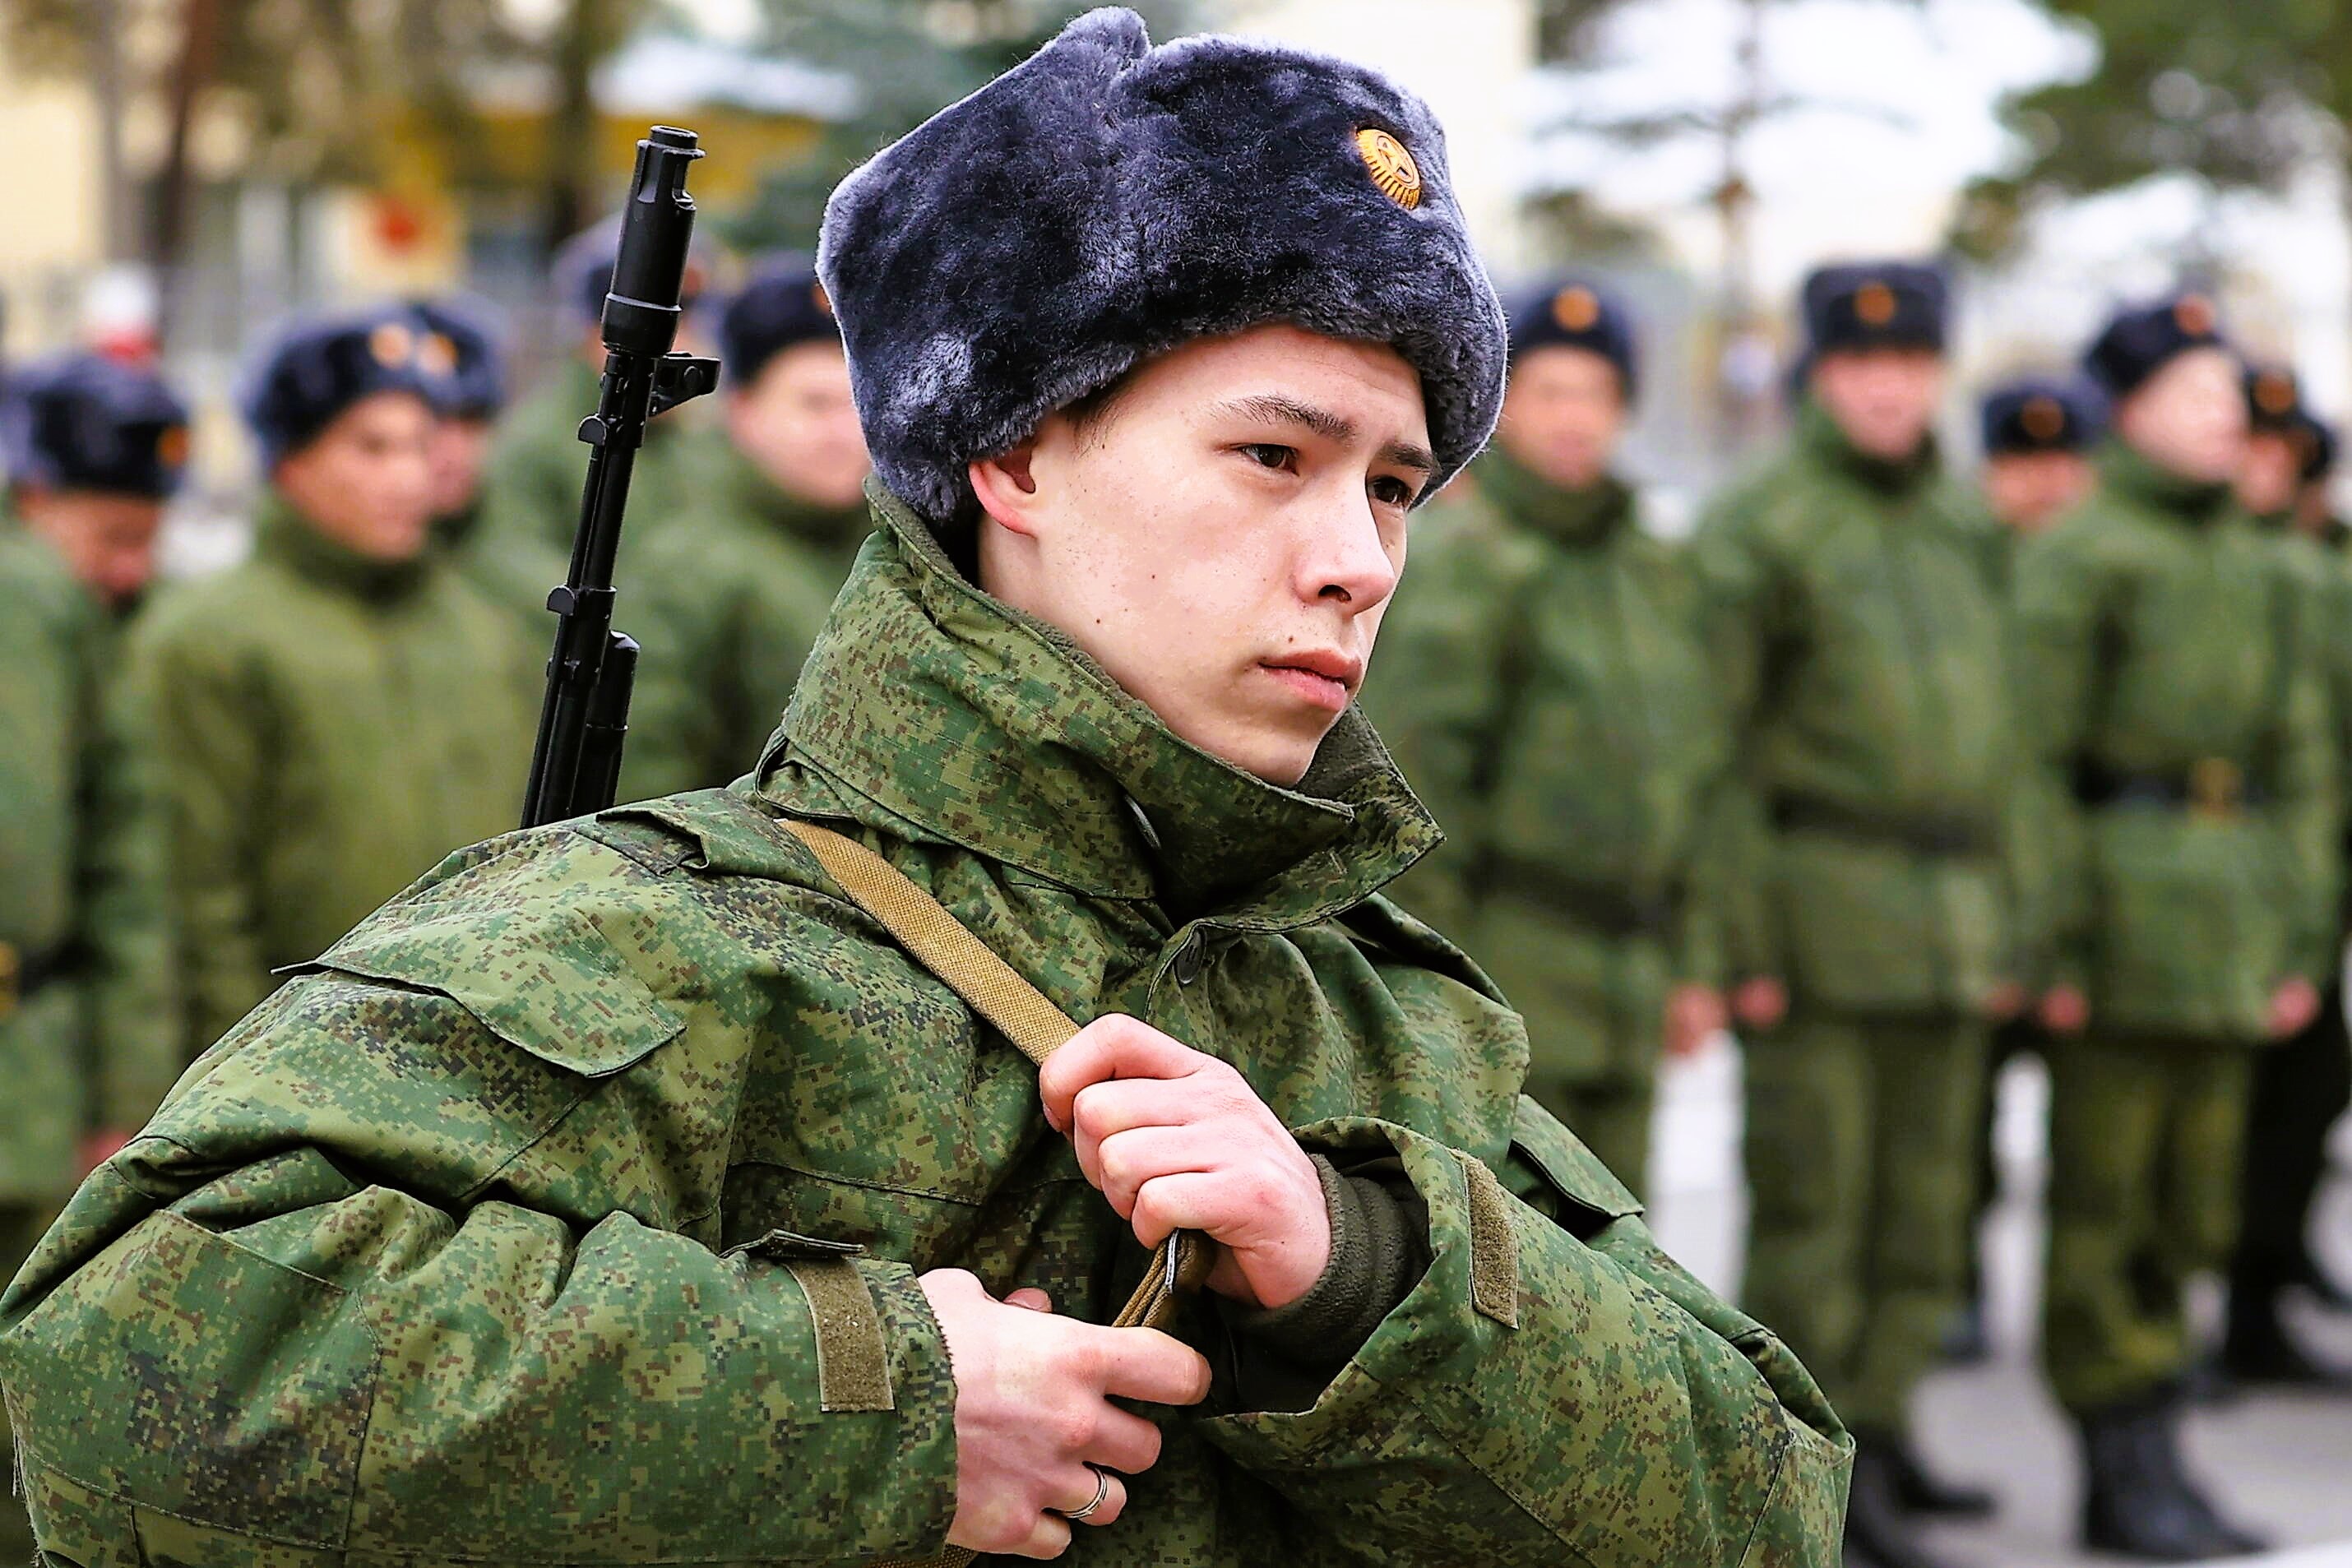 200.000 russische Soldaten gefallen! Neue Zahlen erschüttern ganz Russland - steht das Volk auf?